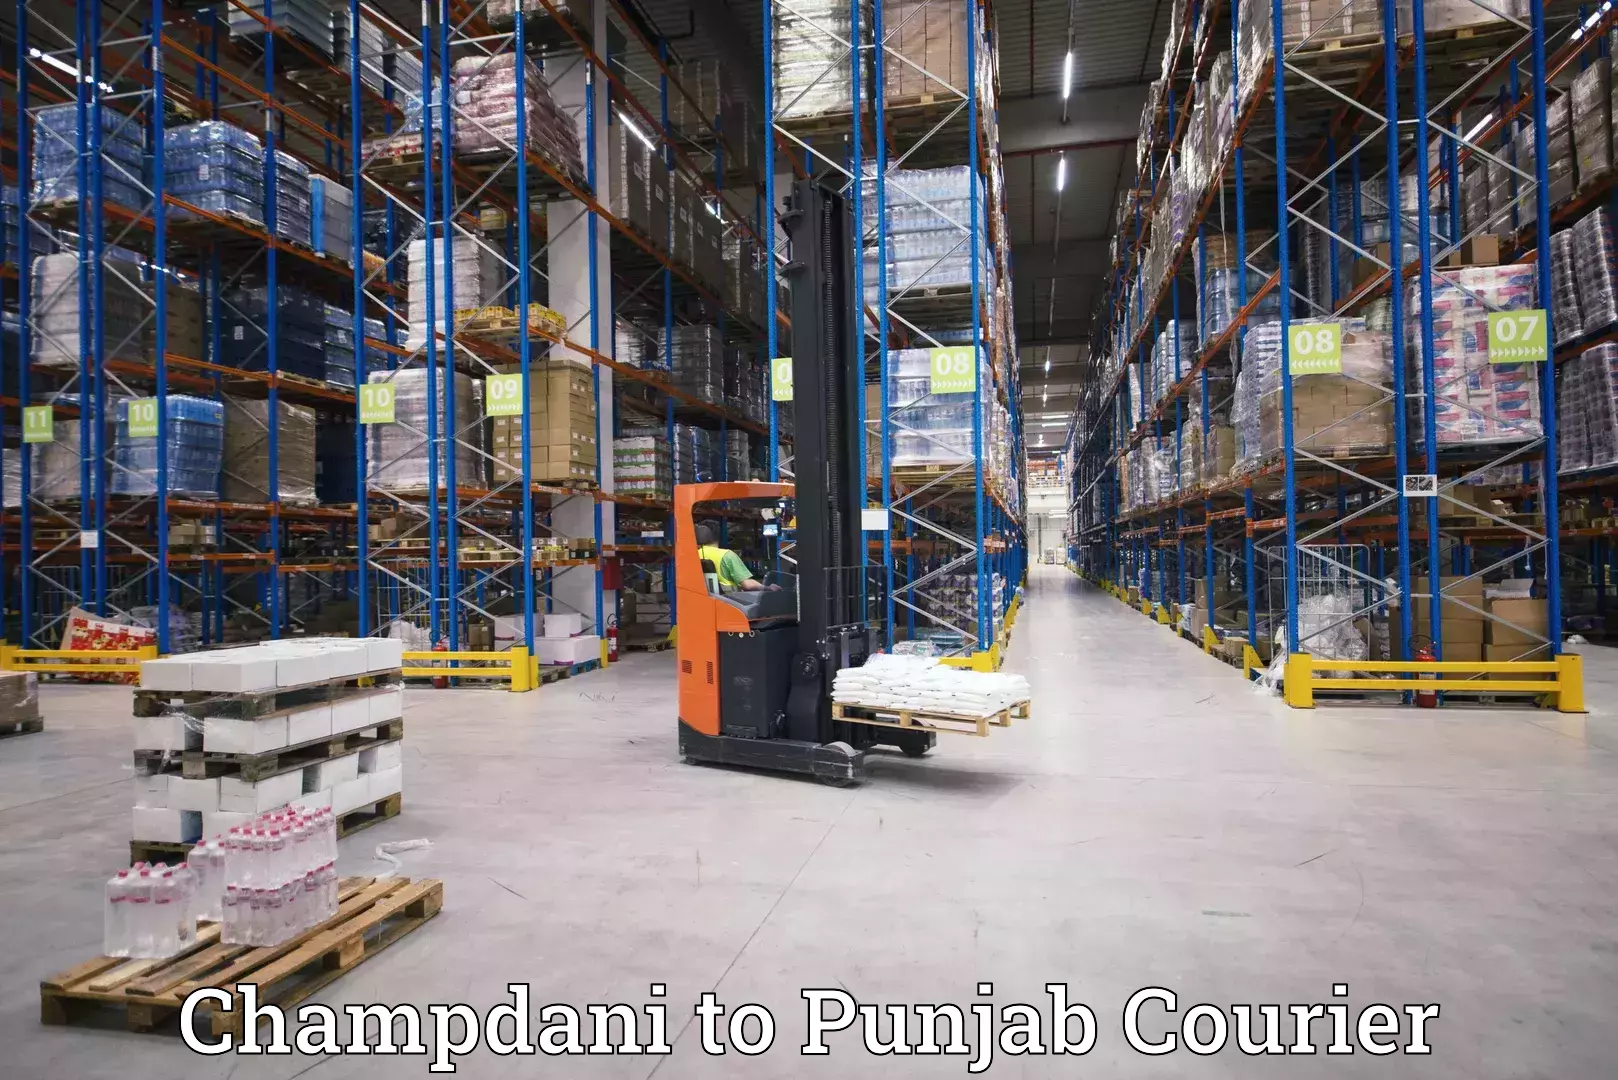 Quick booking process Champdani to Punjab